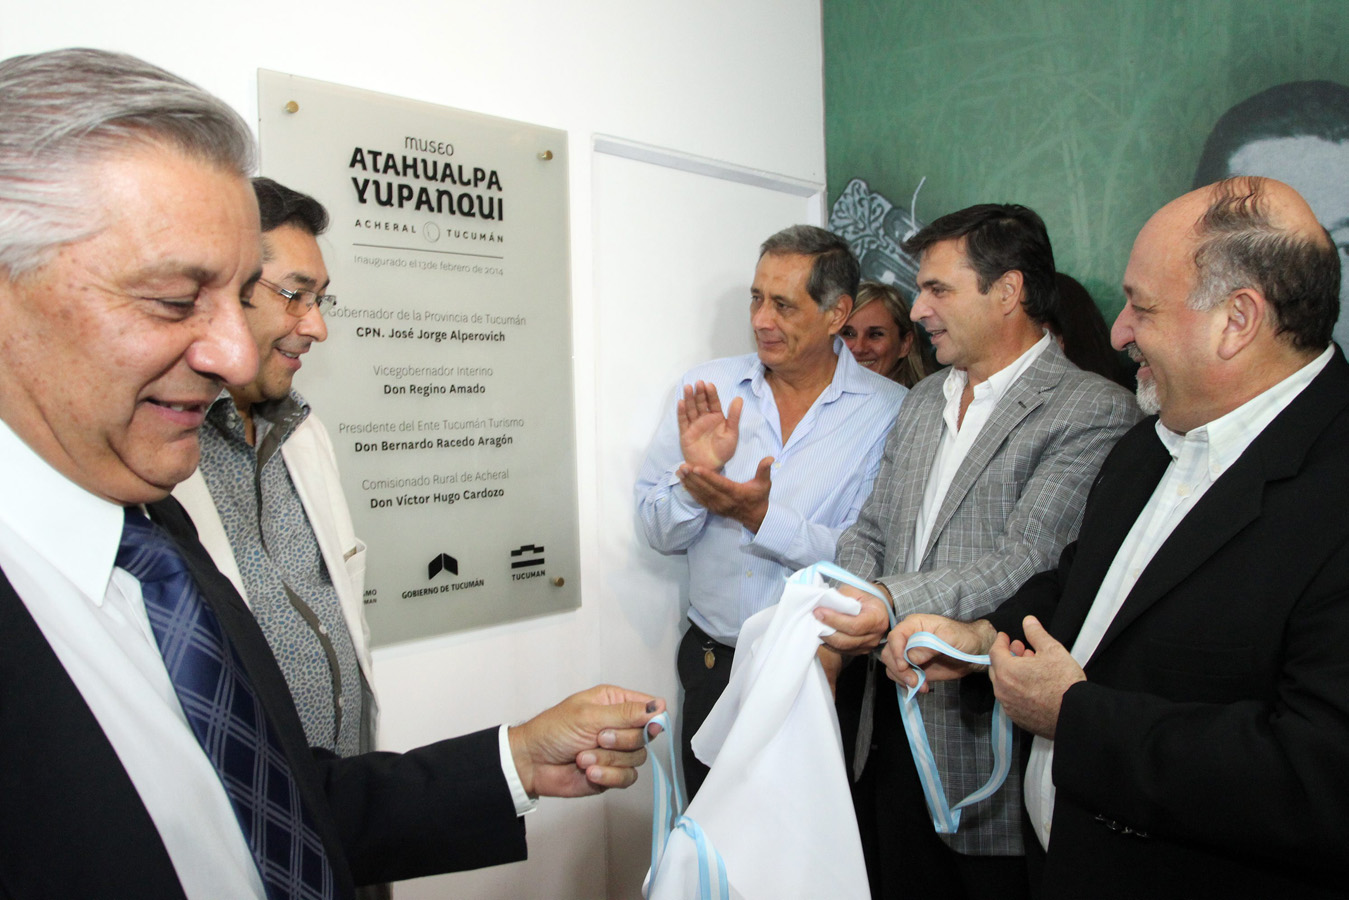 Racedo Aragón descubrió una placa en la entrada al museo